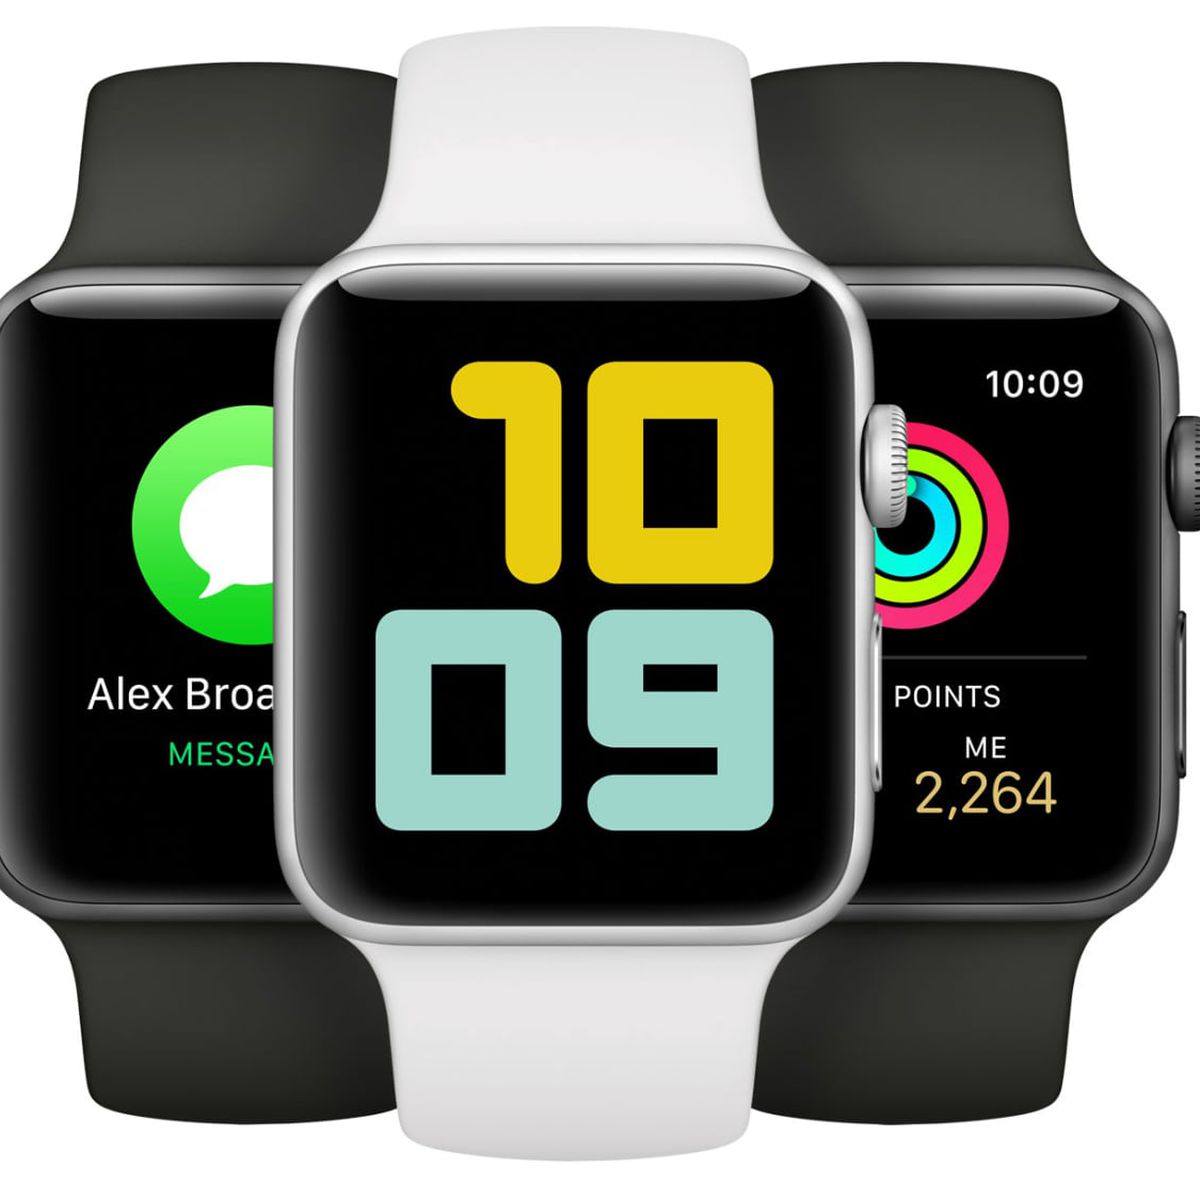 Apple Watch Series 3 será descontinuado no terceiro trimestre, diz